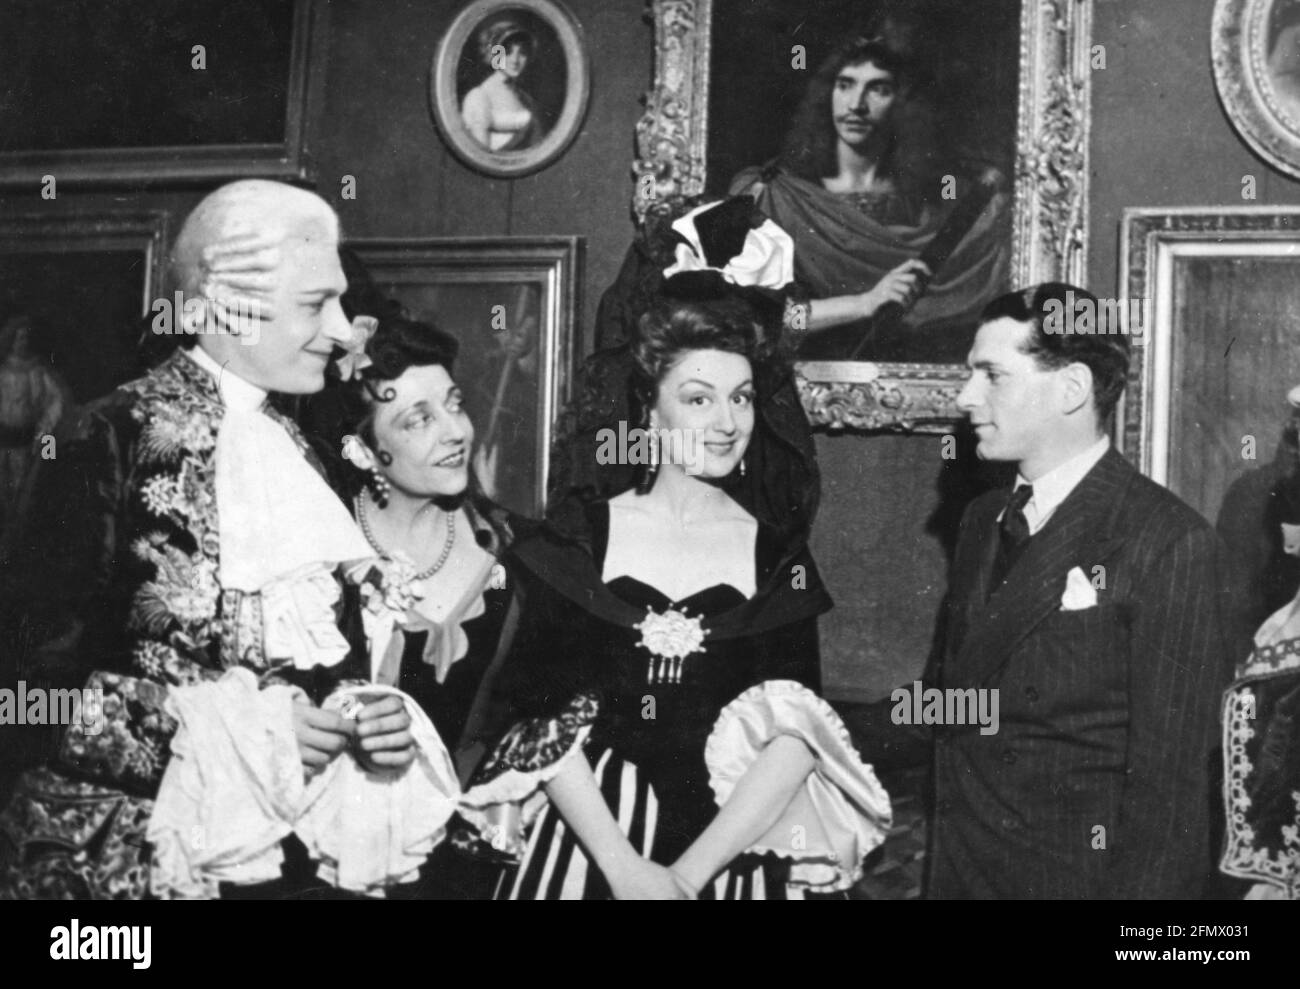 Olivier, Laurence Sir, 22.5.1907 - 11.7.1989, britischer Schauspieler, mit Jean Martinelli, (1910-1983), ZUSÄTZLICHE-RIGHTS-CLEARANCE-INFO-NOT-AVAILABLE Stockfoto